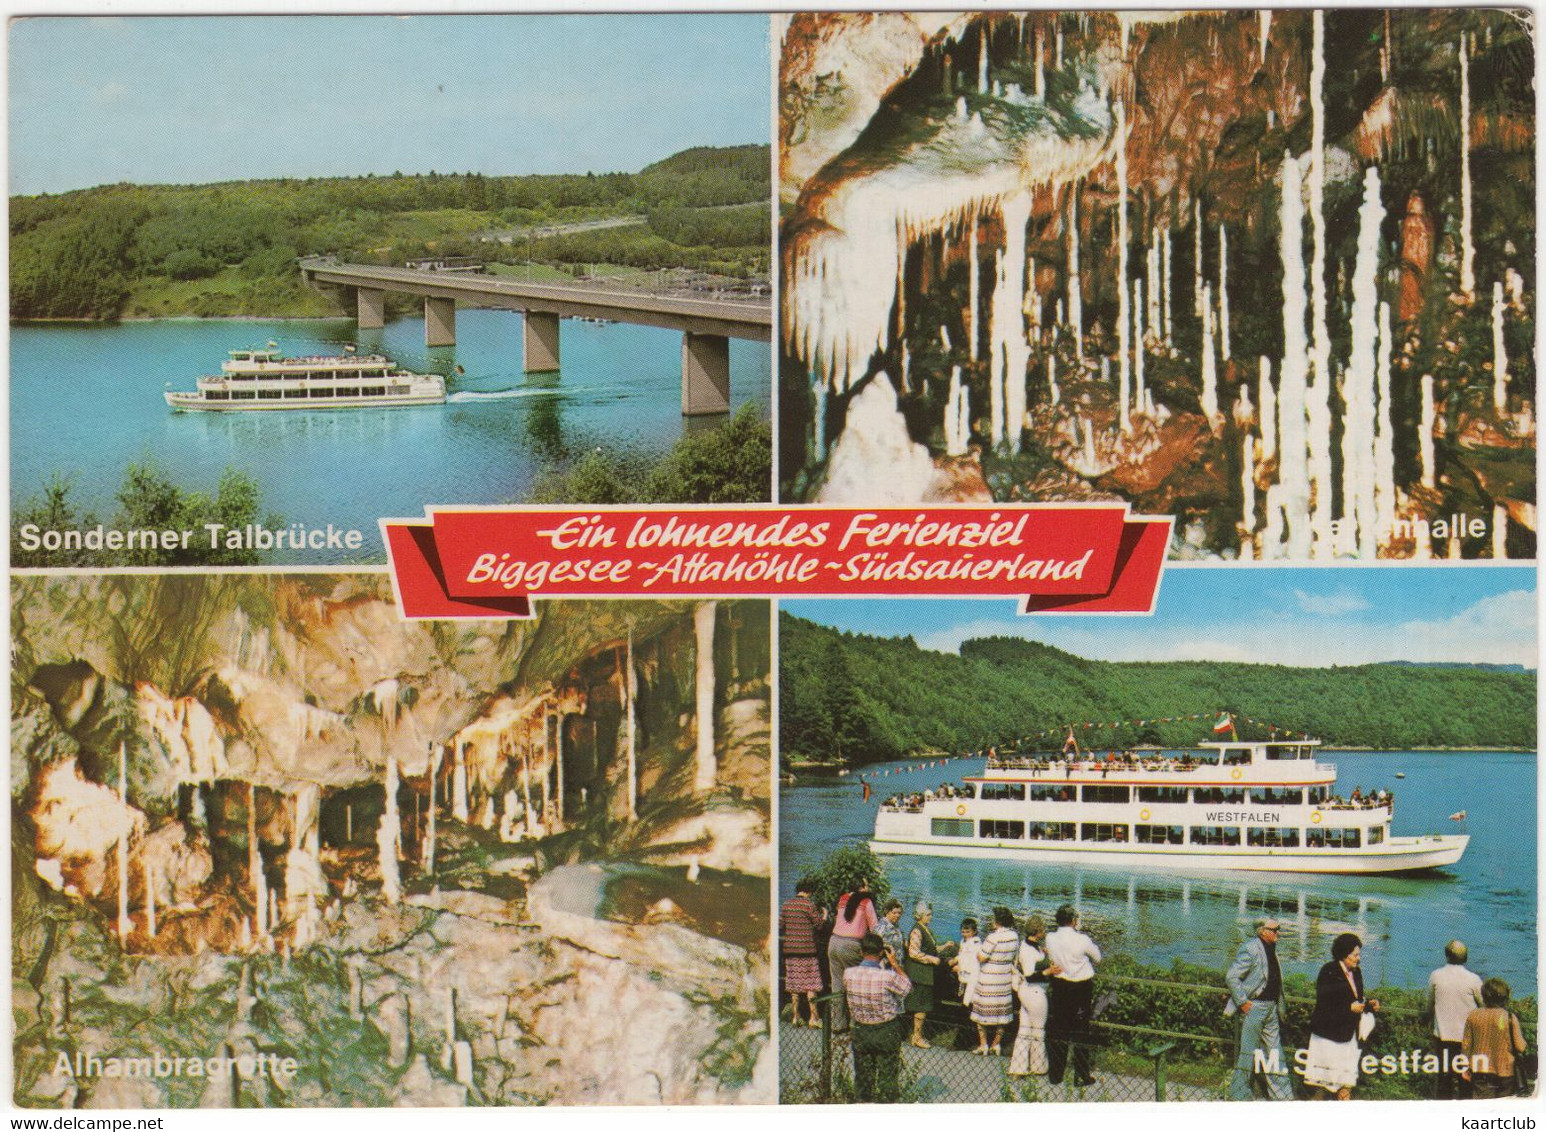 Ein Lohenendes Ferienziel Biggesee-Altahöhle: Passagierschiff MS 'Westfalen' - Attendorner Tropfsteinhöhle, Südsauerland - Attendorn